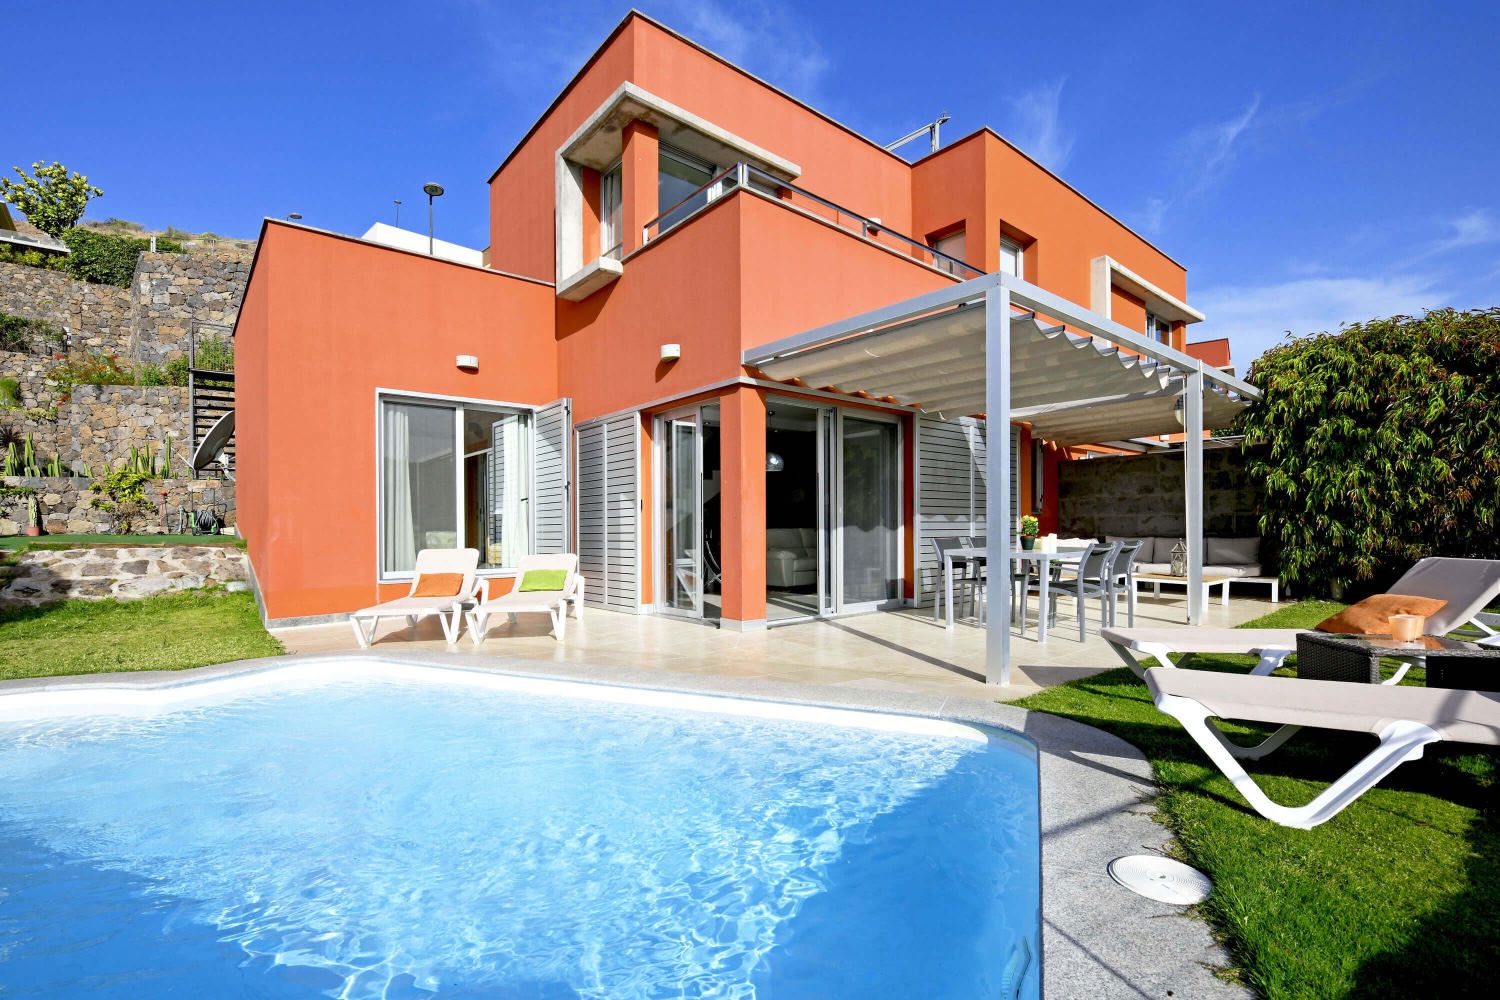 Casa elegantemente arredata con piscina privata riscaldata in una posizione privilegiata in prima linea sul campo da golf